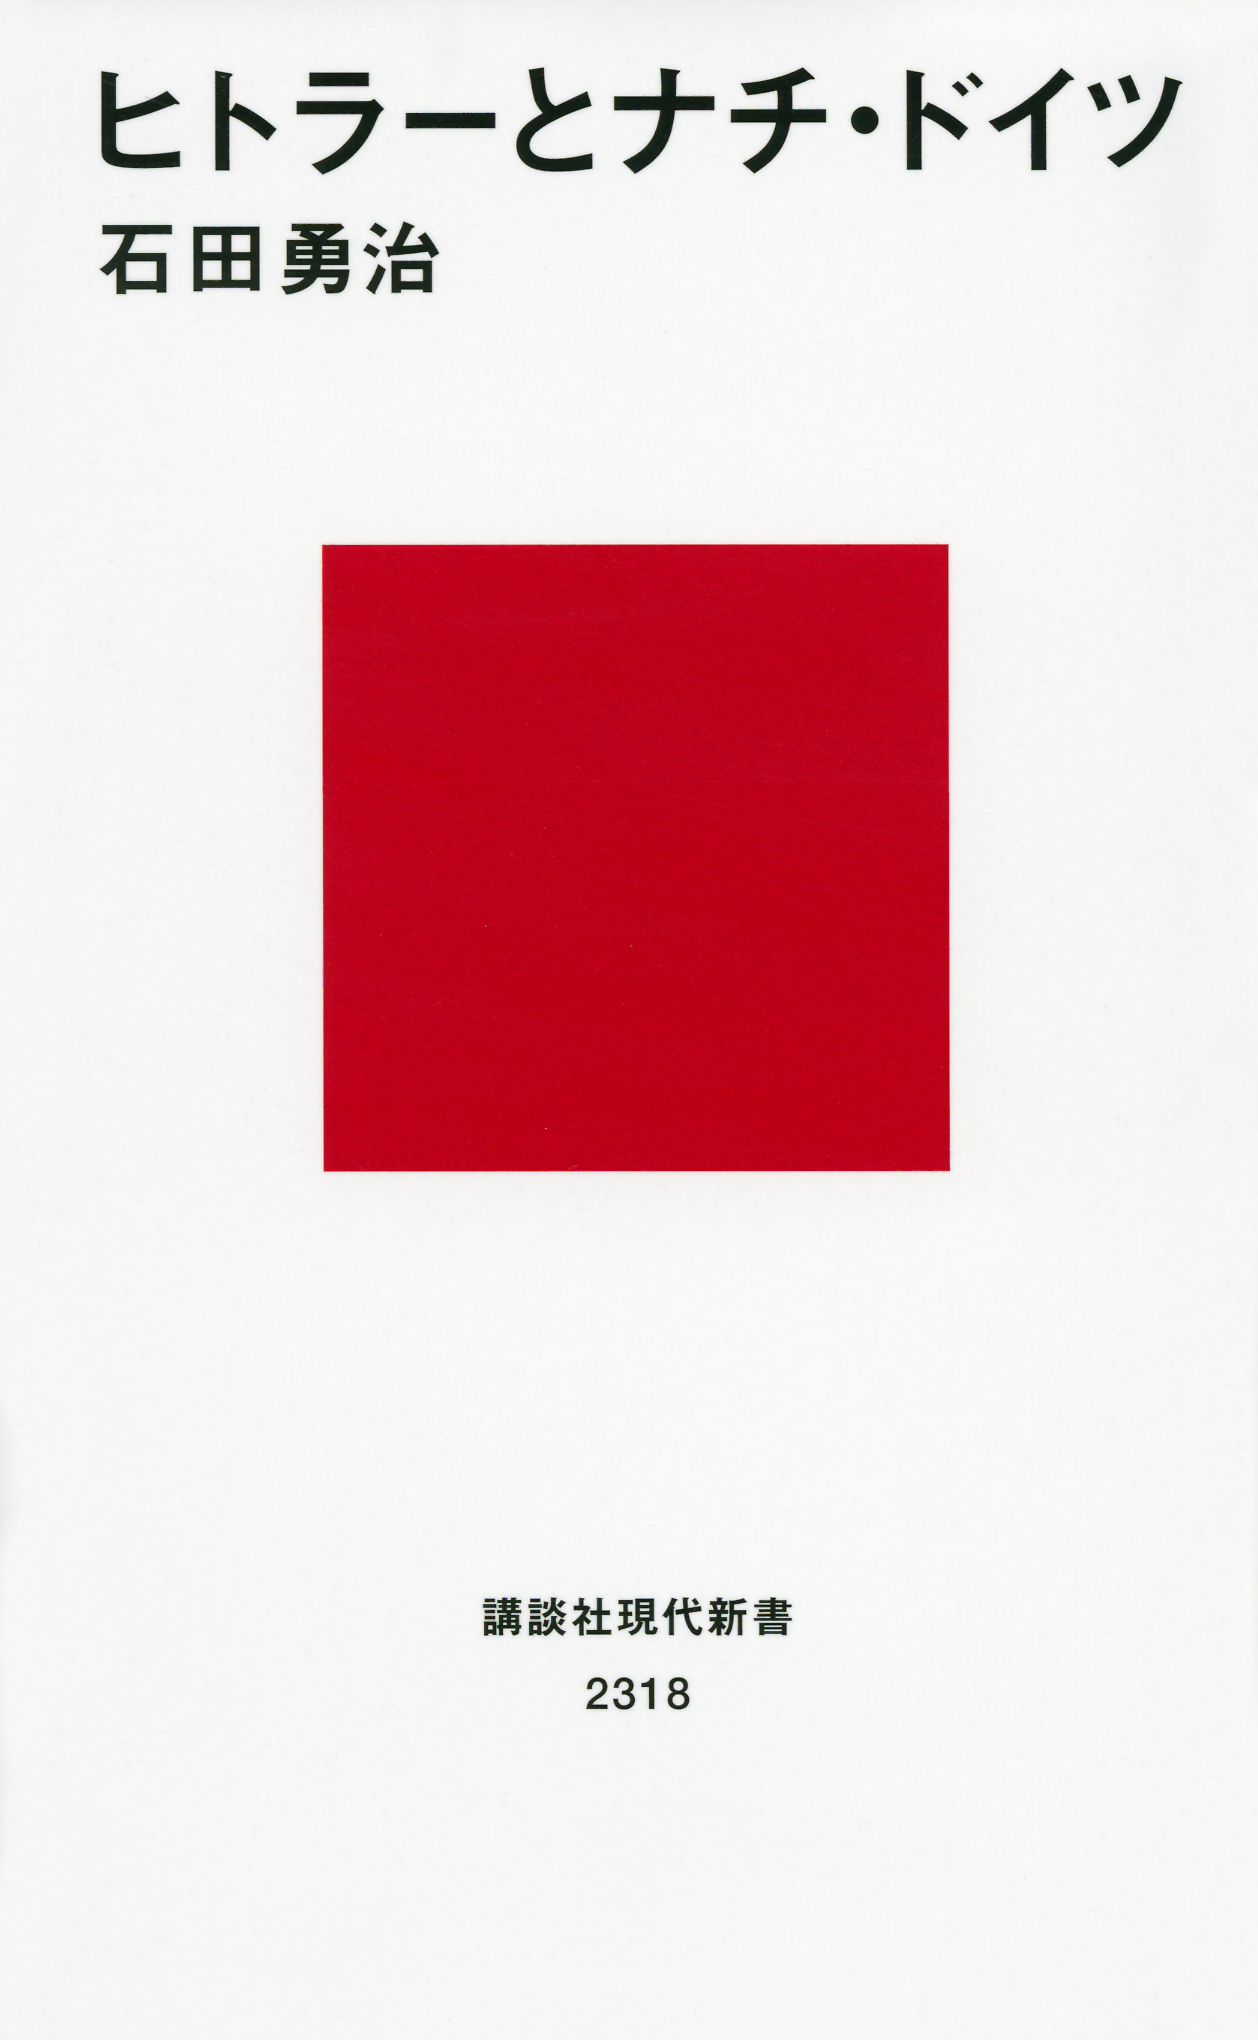 白い表紙の真ん中に四角い赤のデザイン